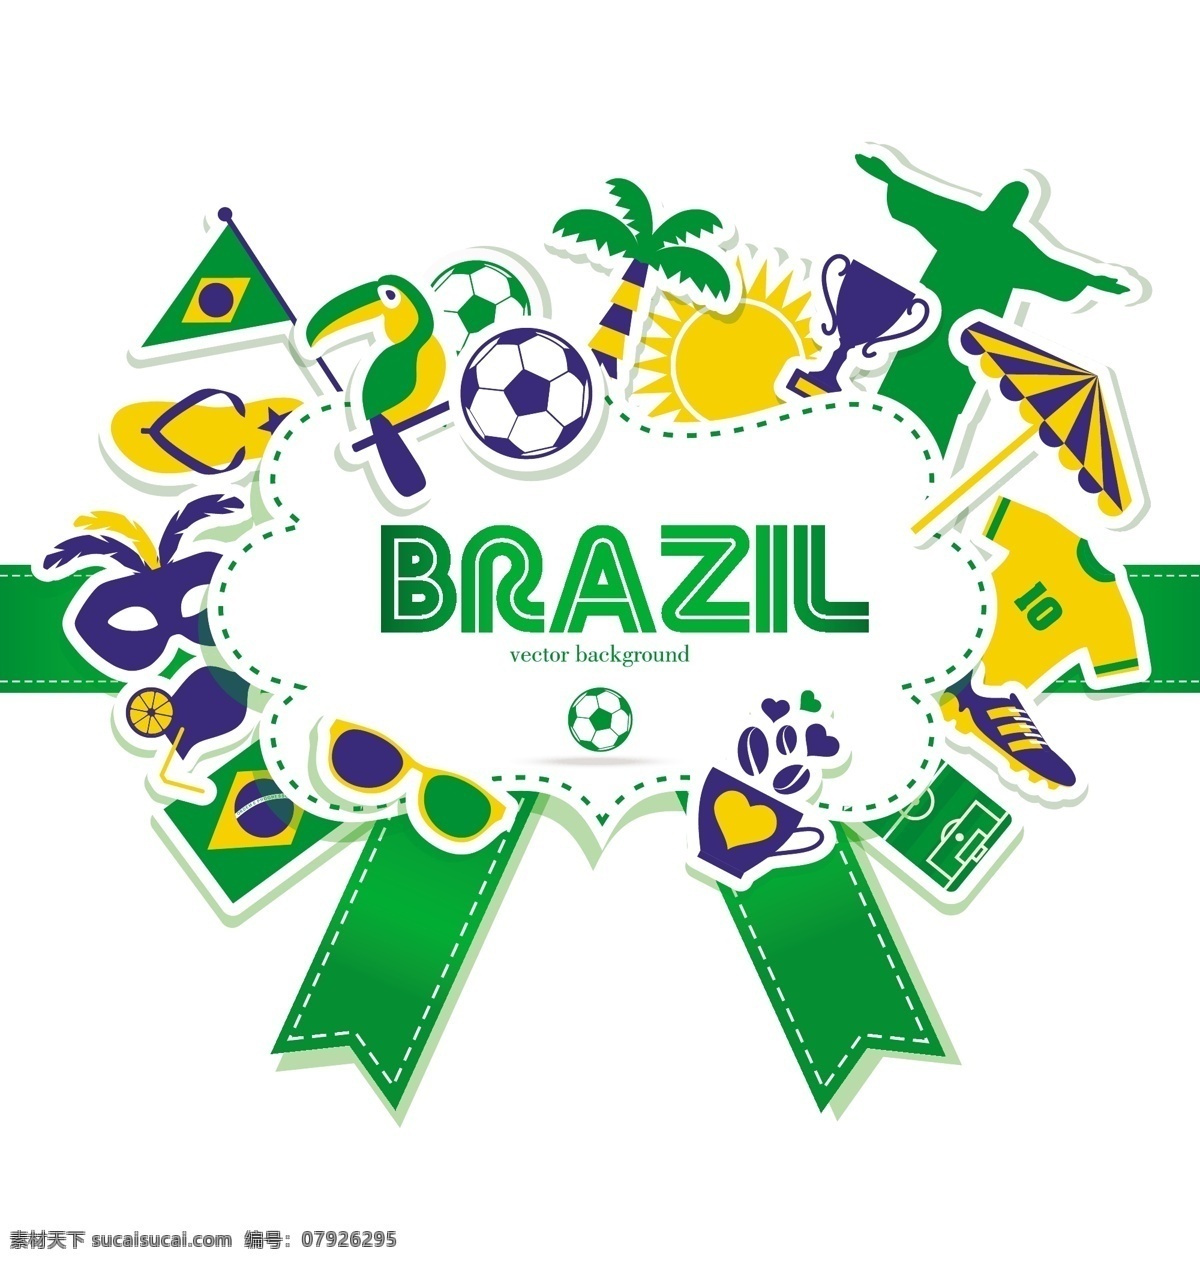 2014 巴西 世界杯 巴西国旗 足球海报 吉祥物 绿色 足球比赛 足球背景 巴西世界杯 足球素材 足球运动 奥运会 手绘 矢量 体育运动 文化艺术